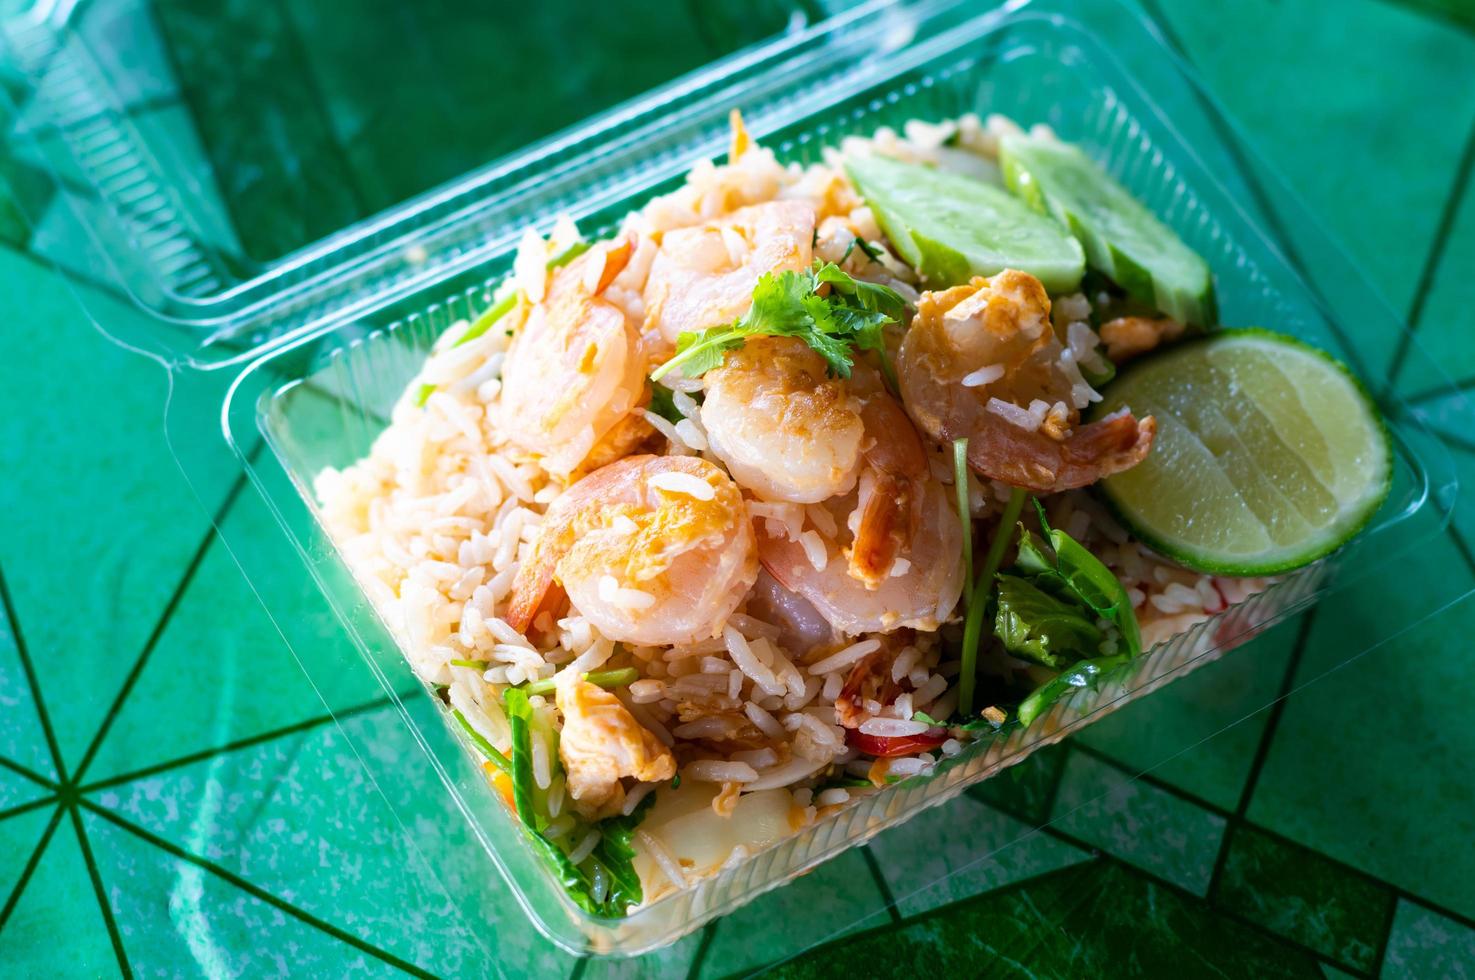 arroz frito coberto com camarão em uma caixa de plástico. foto